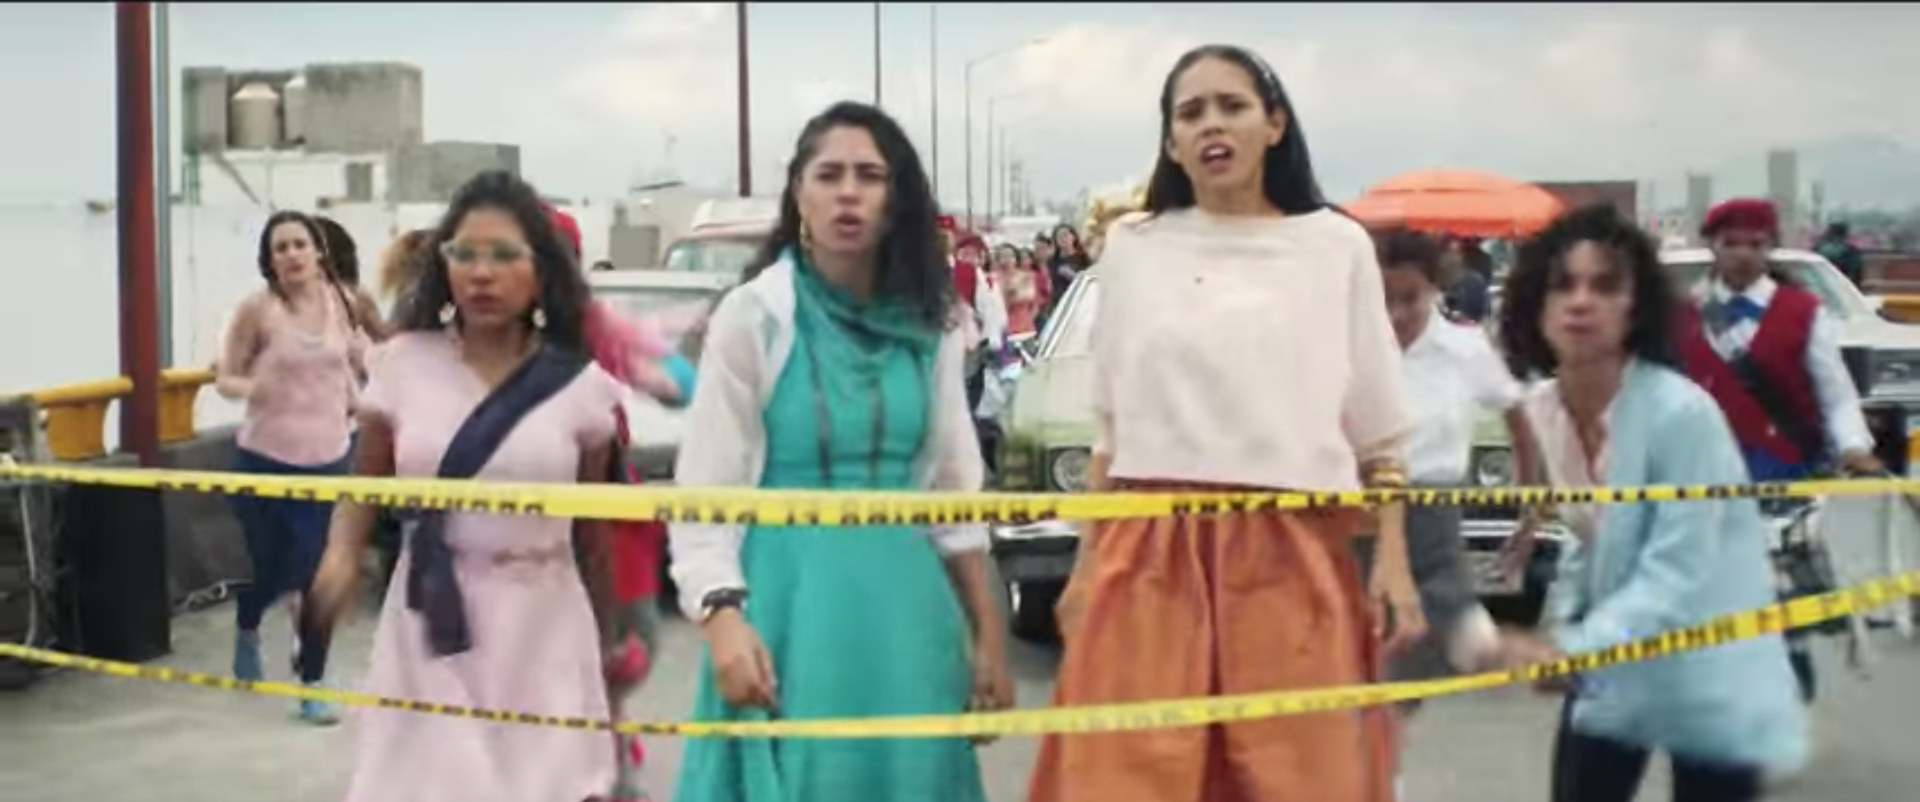 parásito obispo imán Juntas Imparables: El anuncio de Nike que muestra el poder de las mujeres  mexicanas | CNN